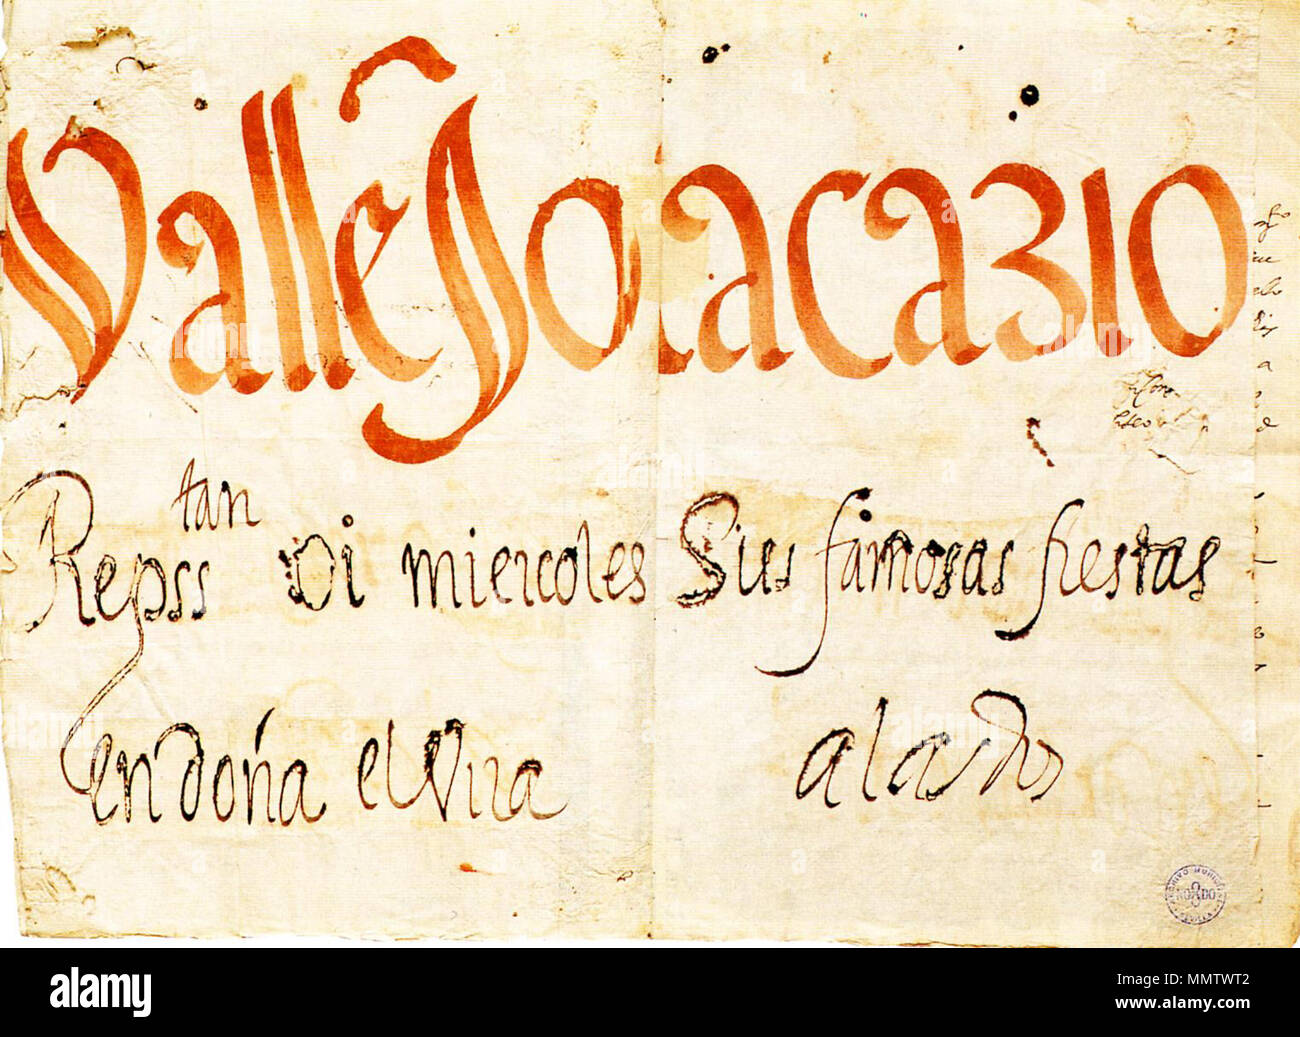 Cartel de una representación en Sevilla (1619) Stock Photo